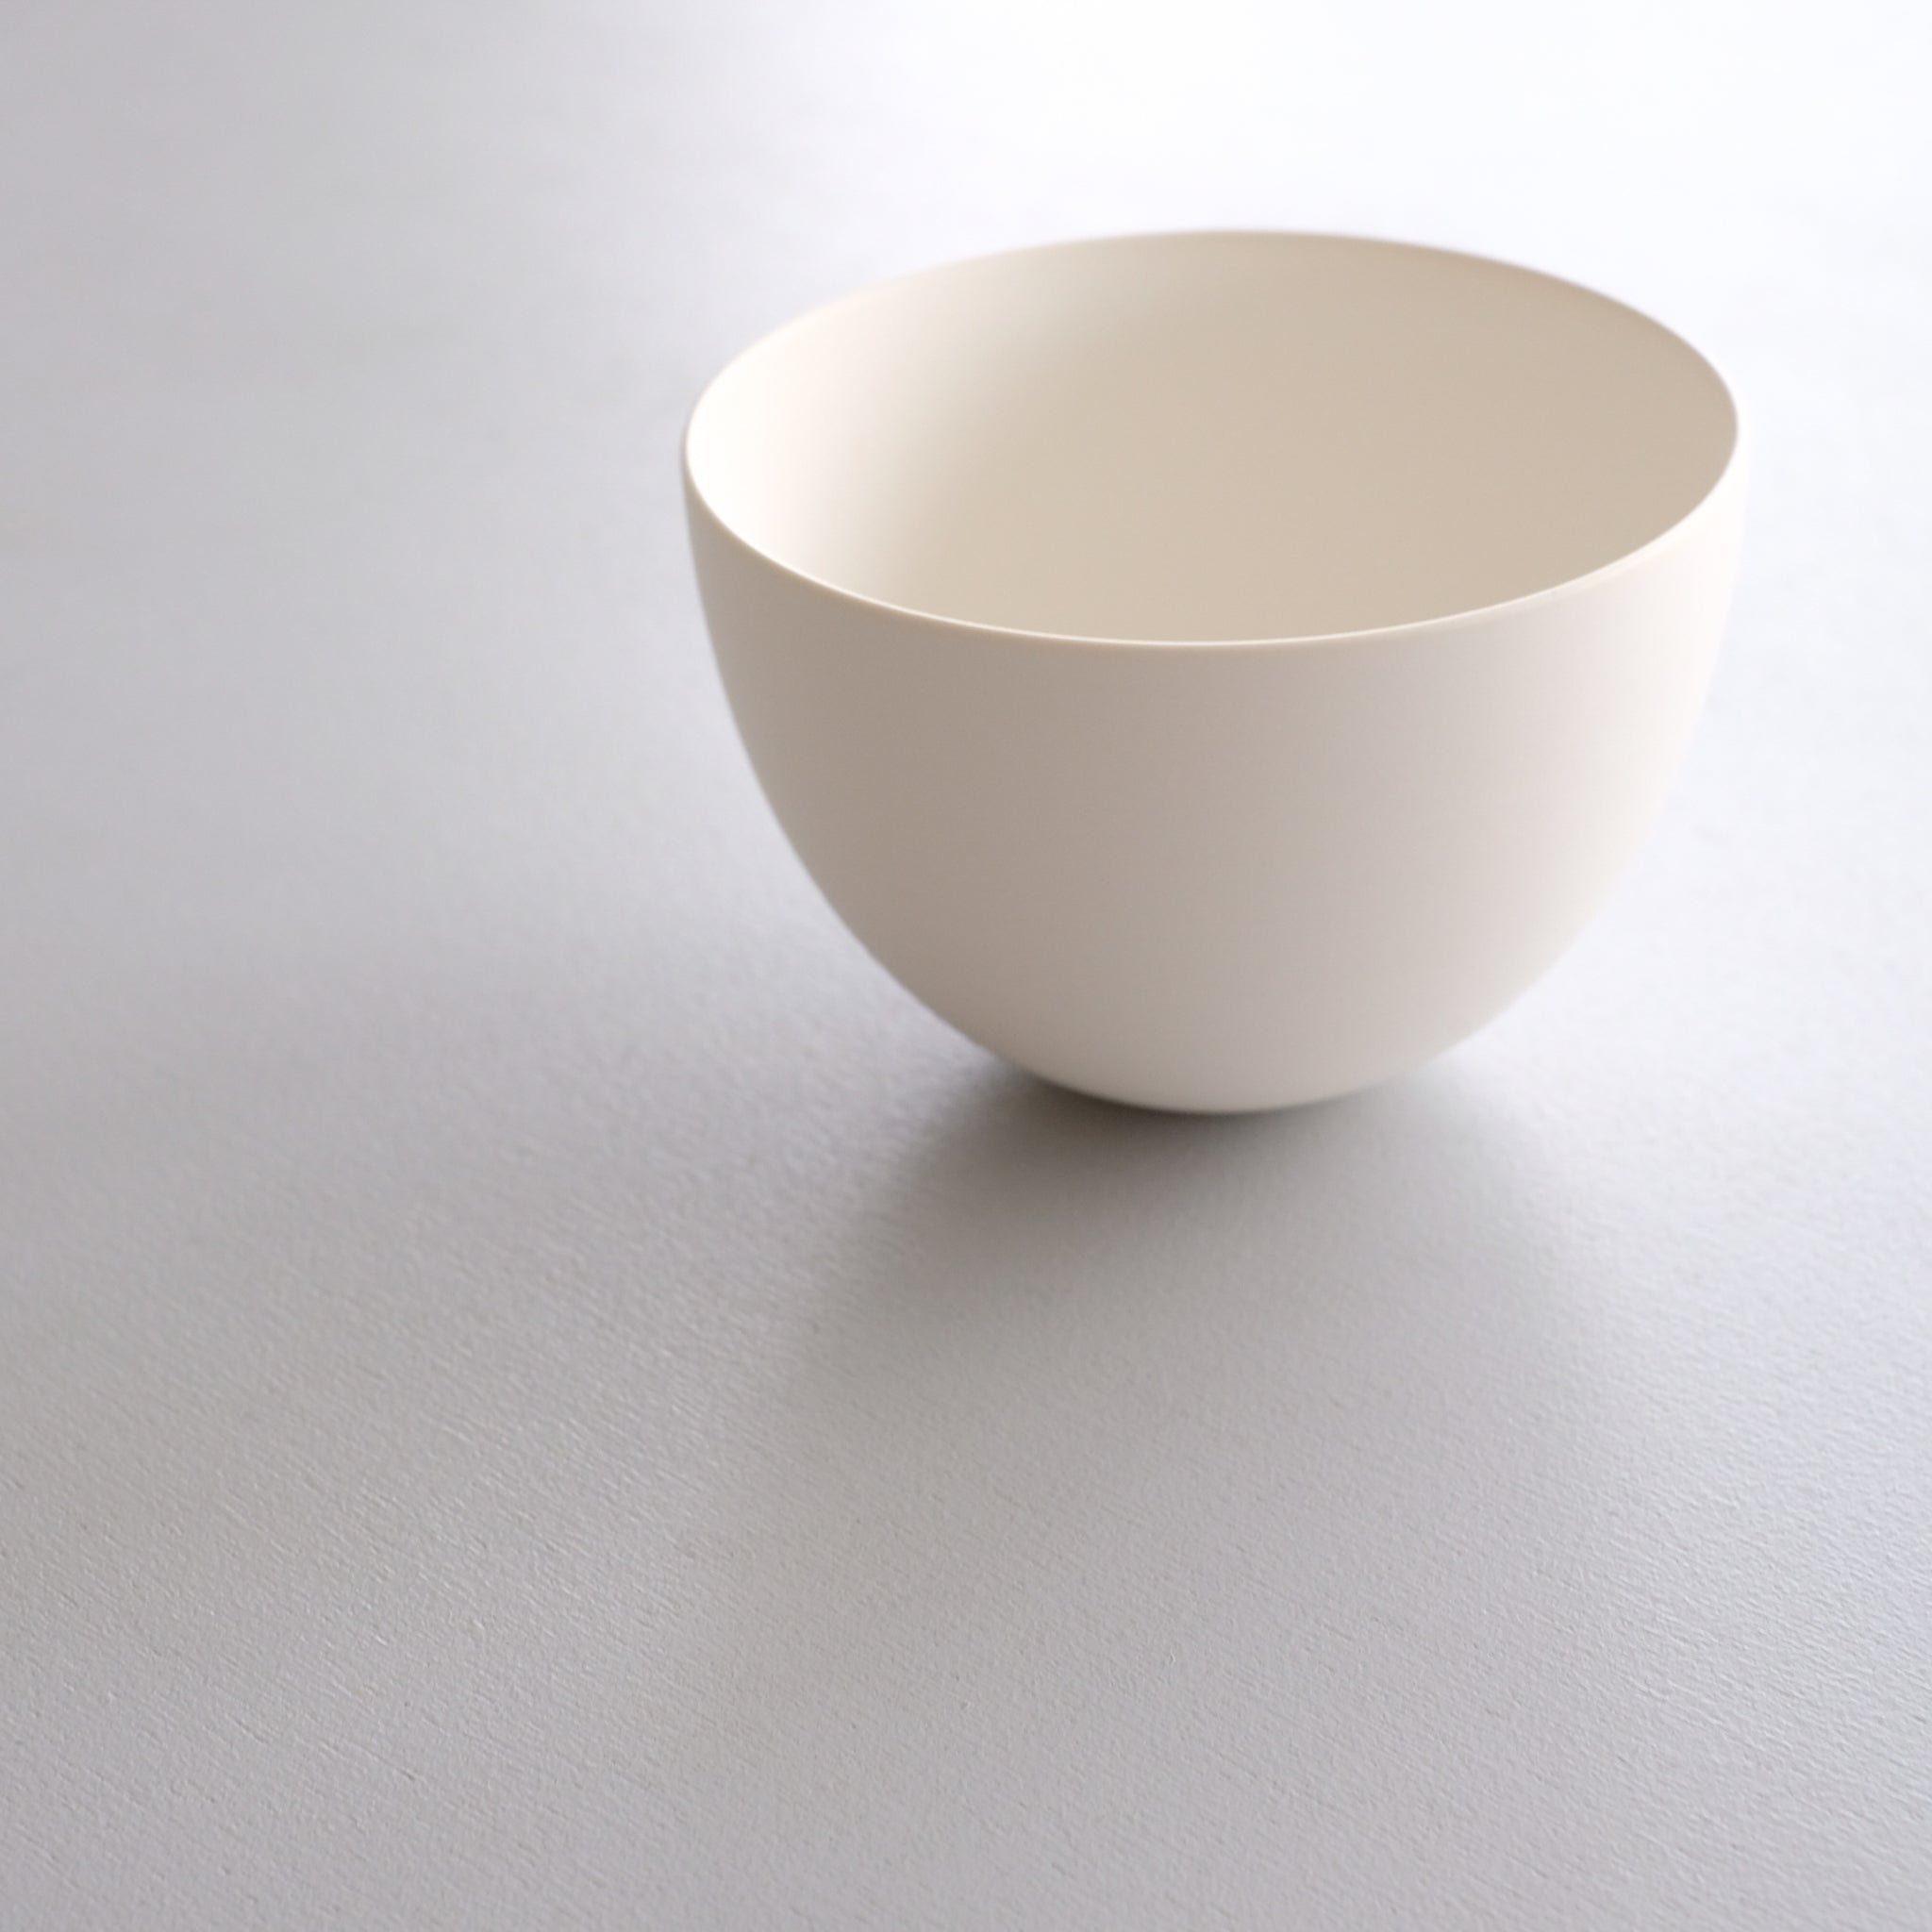 服部竜也  白マットボウル S (φ11.5cm) Tatsuya Hattori  Bowl S( φ11.5cm, matte white ) ETH40